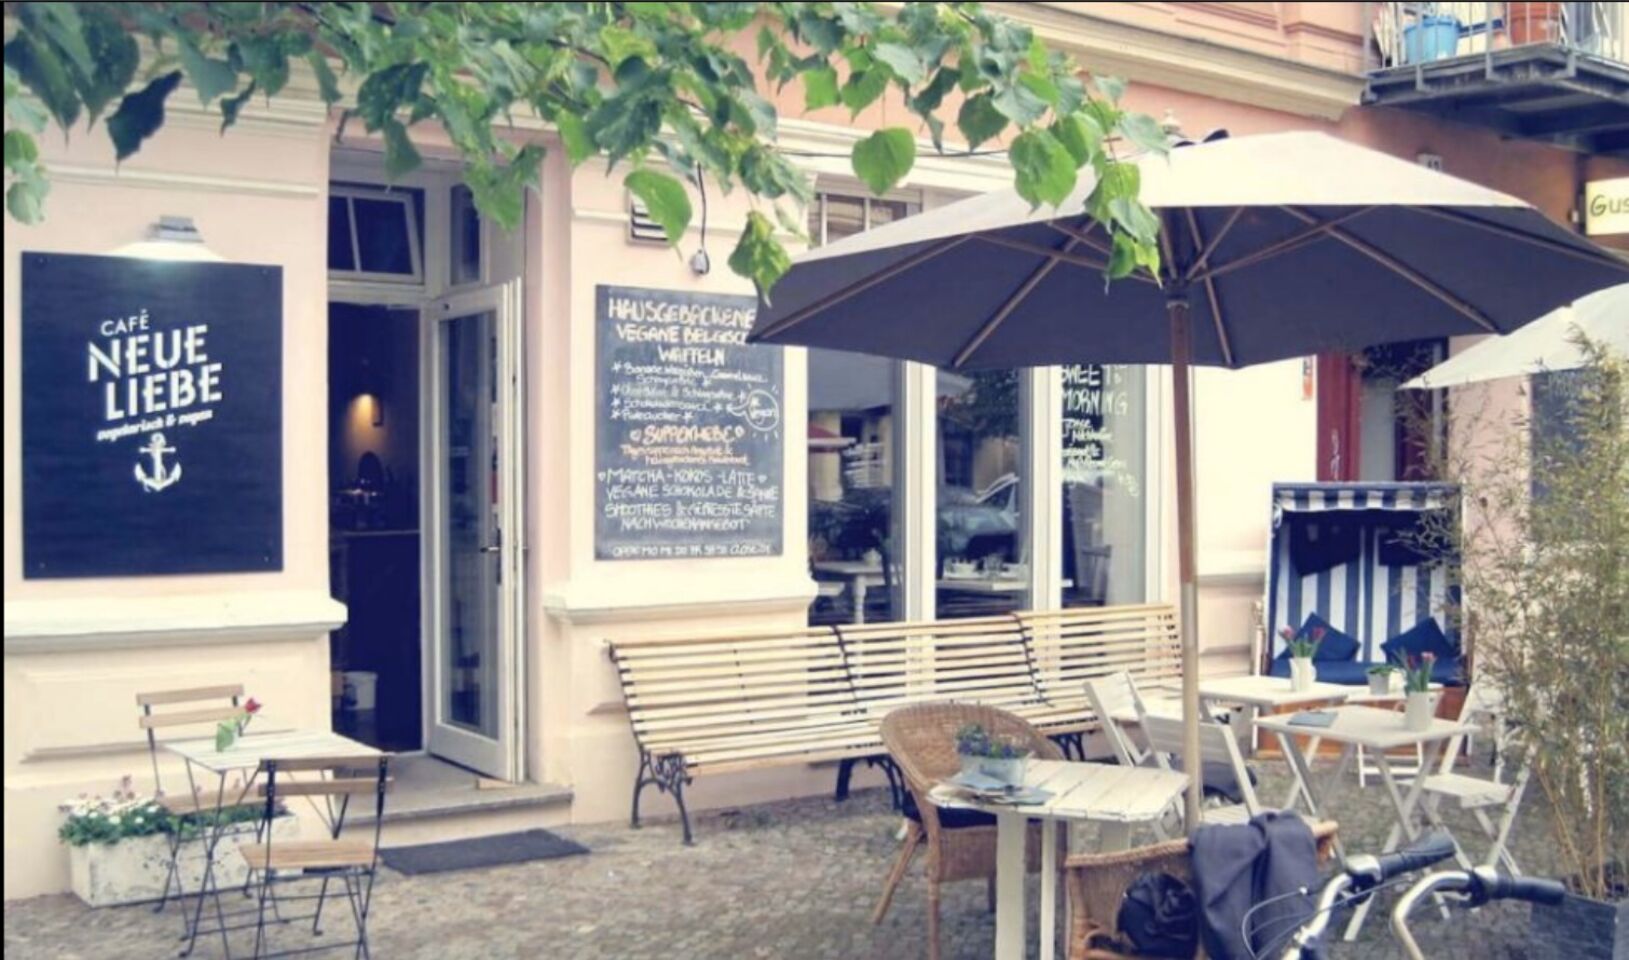 A photo of Café Neue Liebe